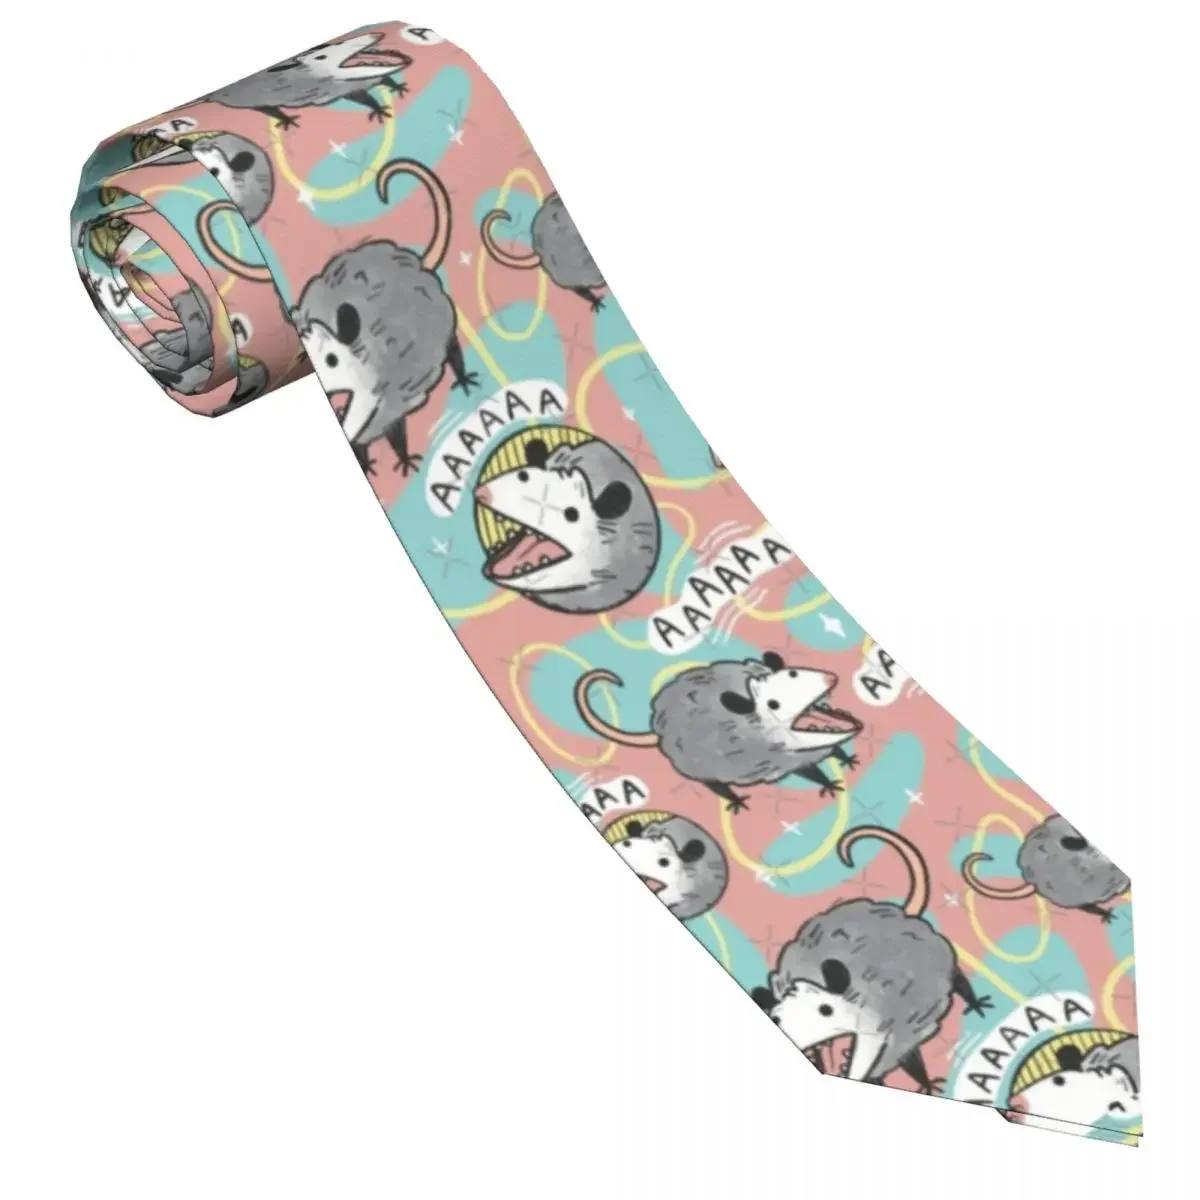 Cartoon Animal Cute Tie Anime Wedding Party Neck Ties Cute Funny Neck Tie For Men Custom DIY Collar Tie Necktie Gift